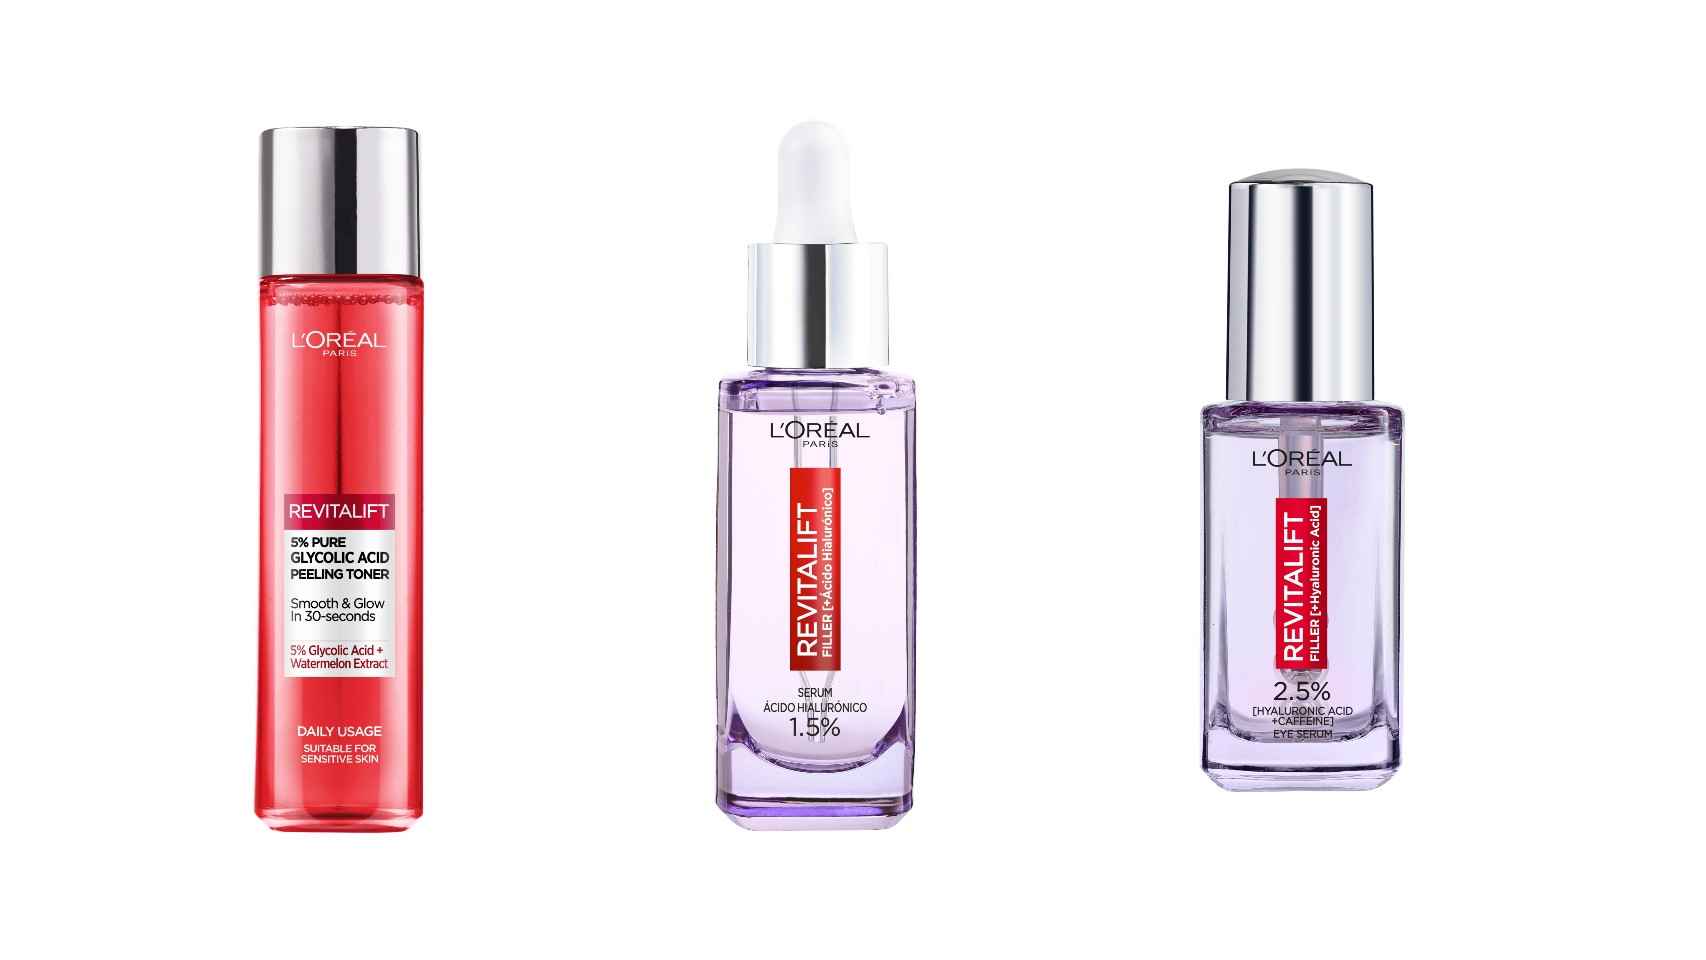 Los tres productos básicos de L’Oréal Paris, recomendados por Irene Rosado.